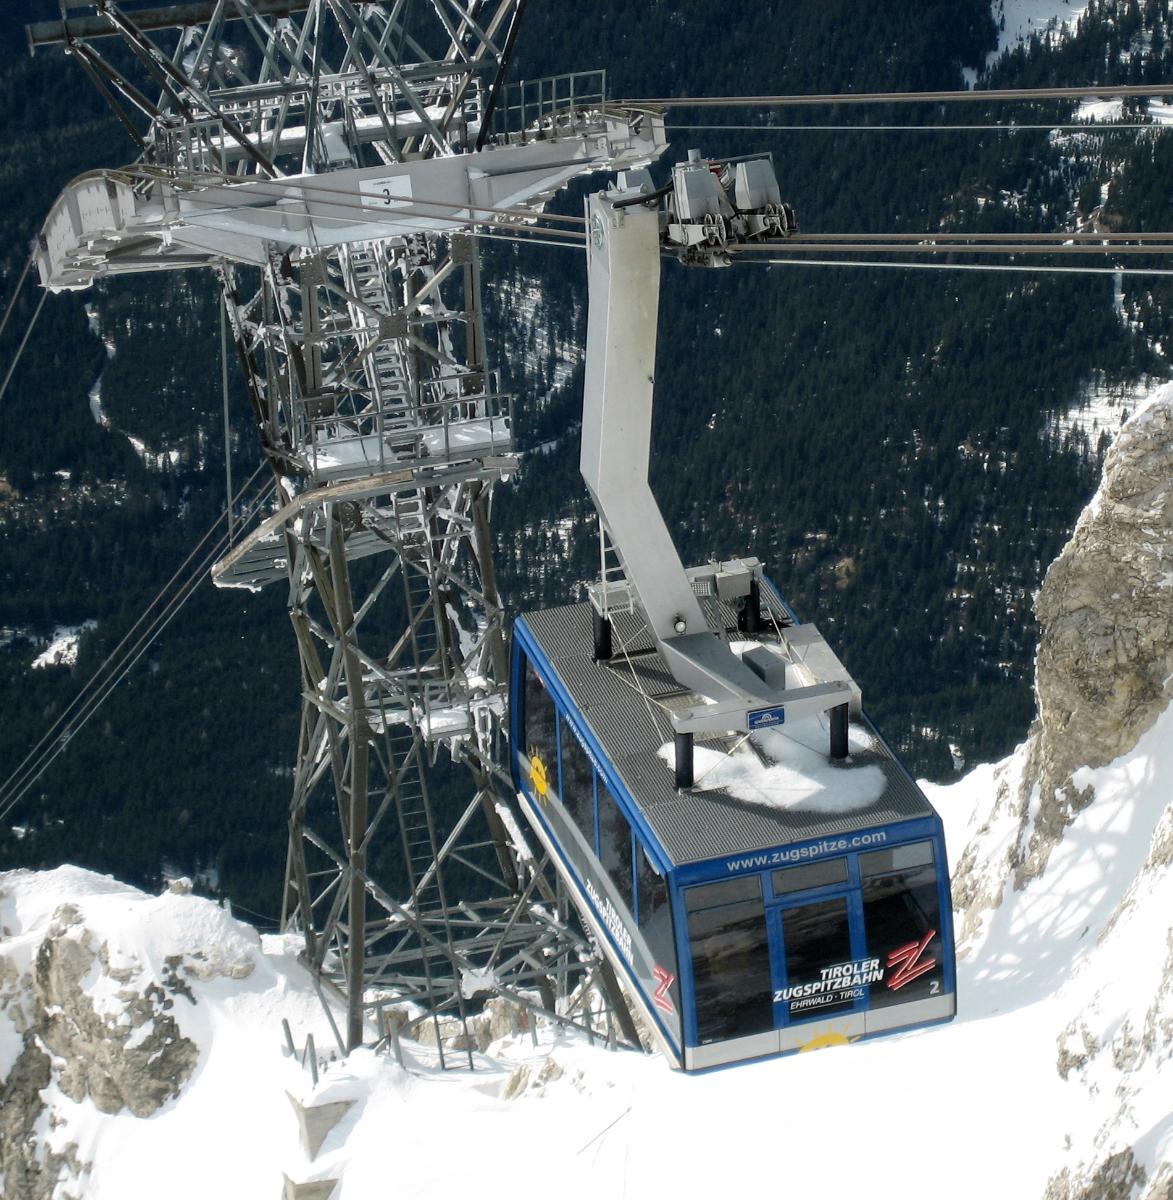 Tiroler Zugspitzbahn Blick von der Spitze auf die Kabine oberhalb der 3. Stütze (100 Personen Kapazität)